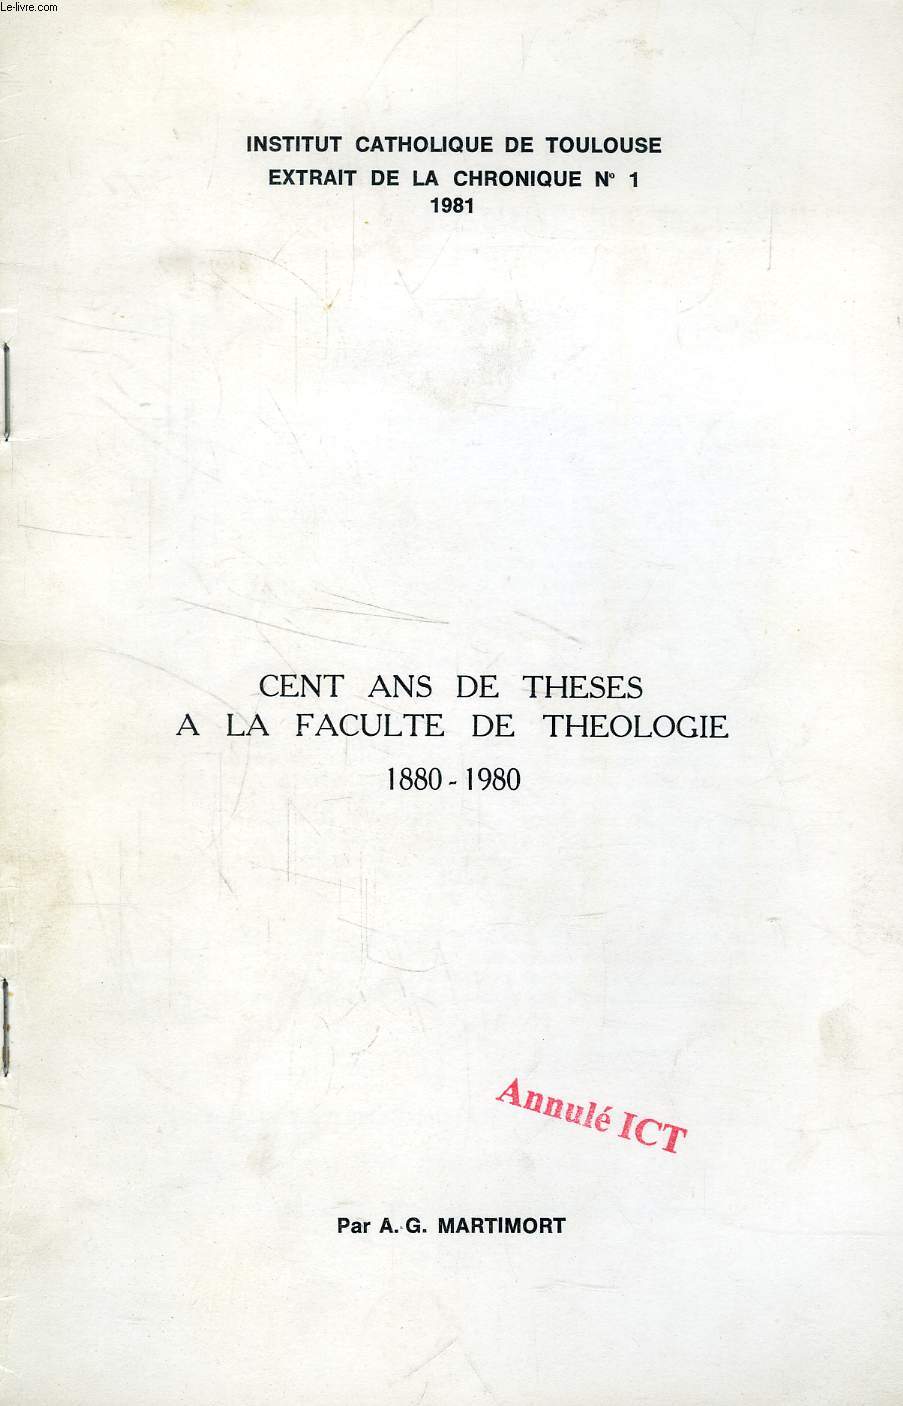 CENT ANS DE THESES A LA FACULTE DE THEOLOGIE, 1880-1980 (TIRE A PART)